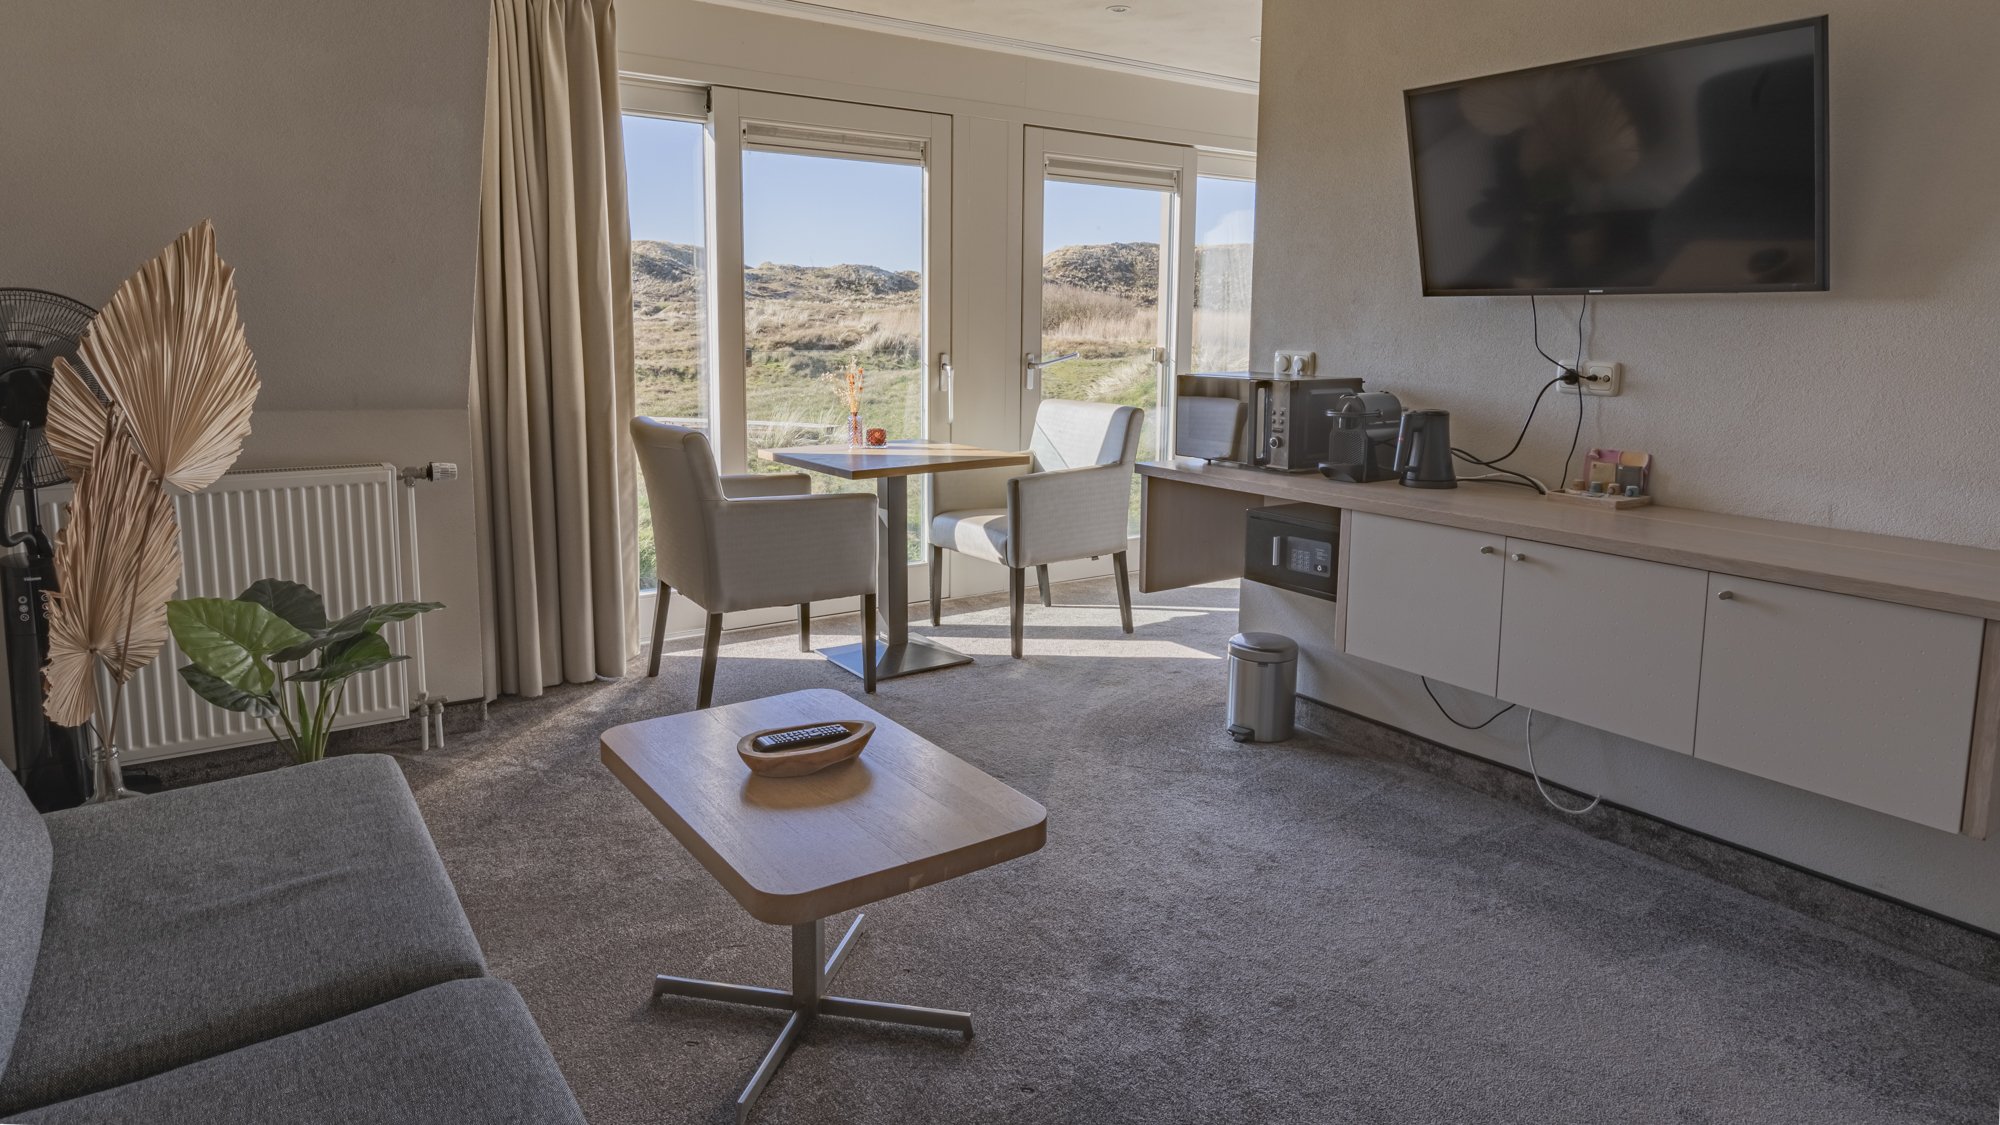 Strandhotel-camperduin-duinen-juniorsuite-woonkamer-uitzicht-w.jpg